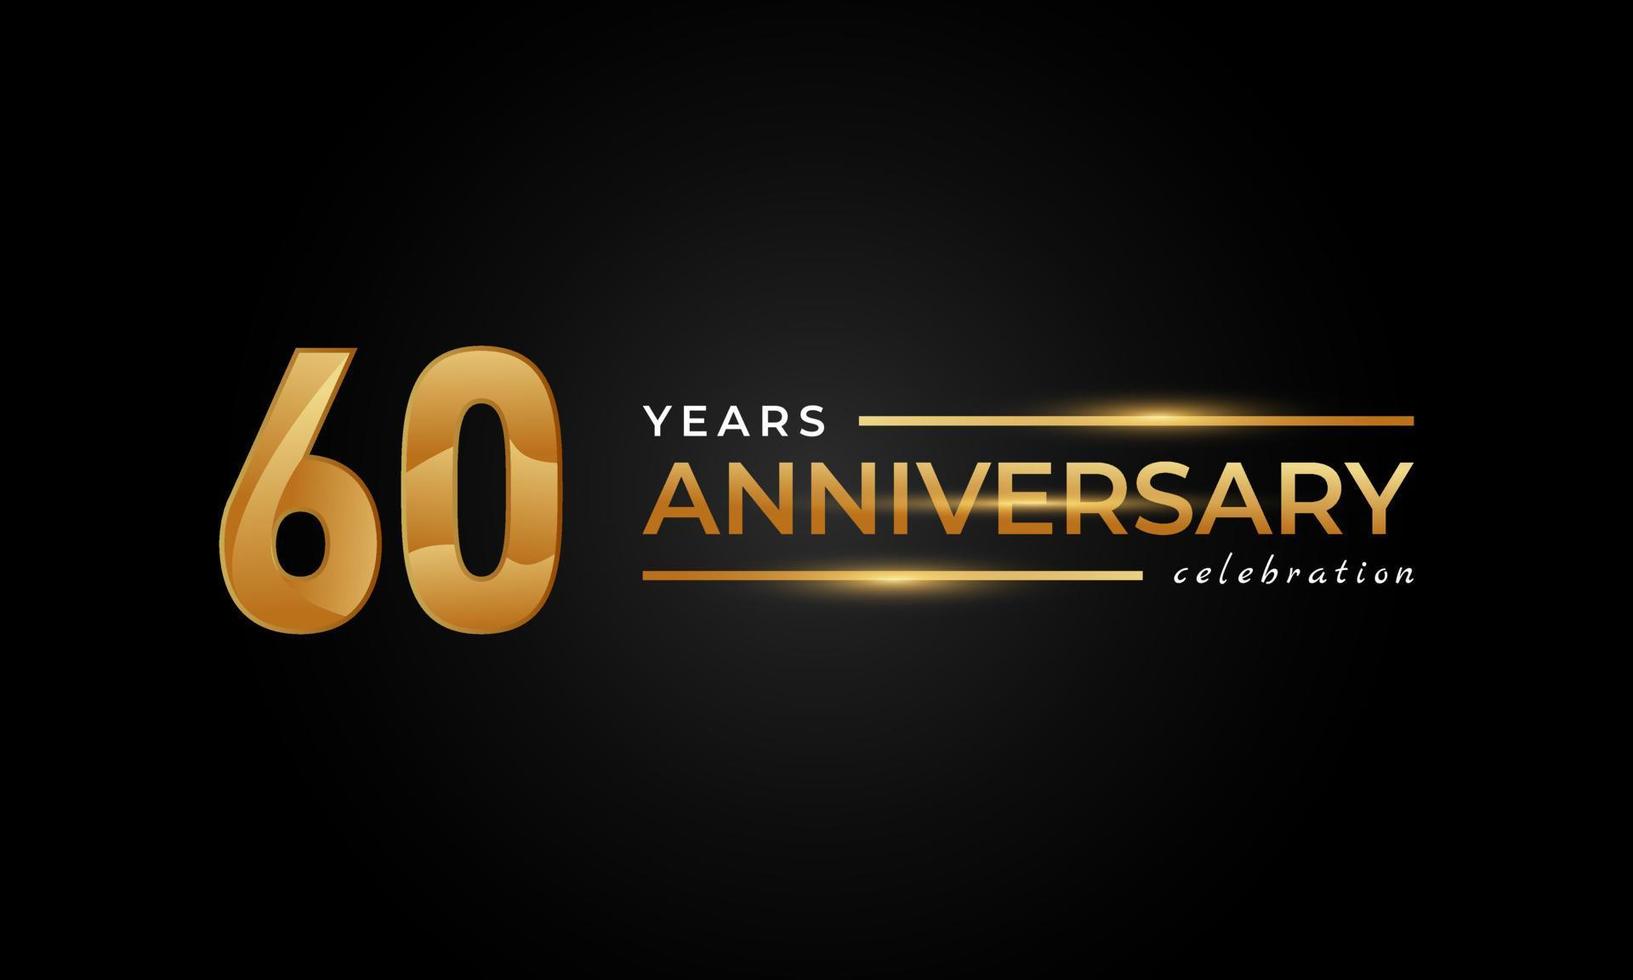 60-jarig jubileumfeest met glanzende gouden en zilveren kleur voor feestgebeurtenis, bruiloft, wenskaart en uitnodiging geïsoleerd op zwarte achtergrond vector